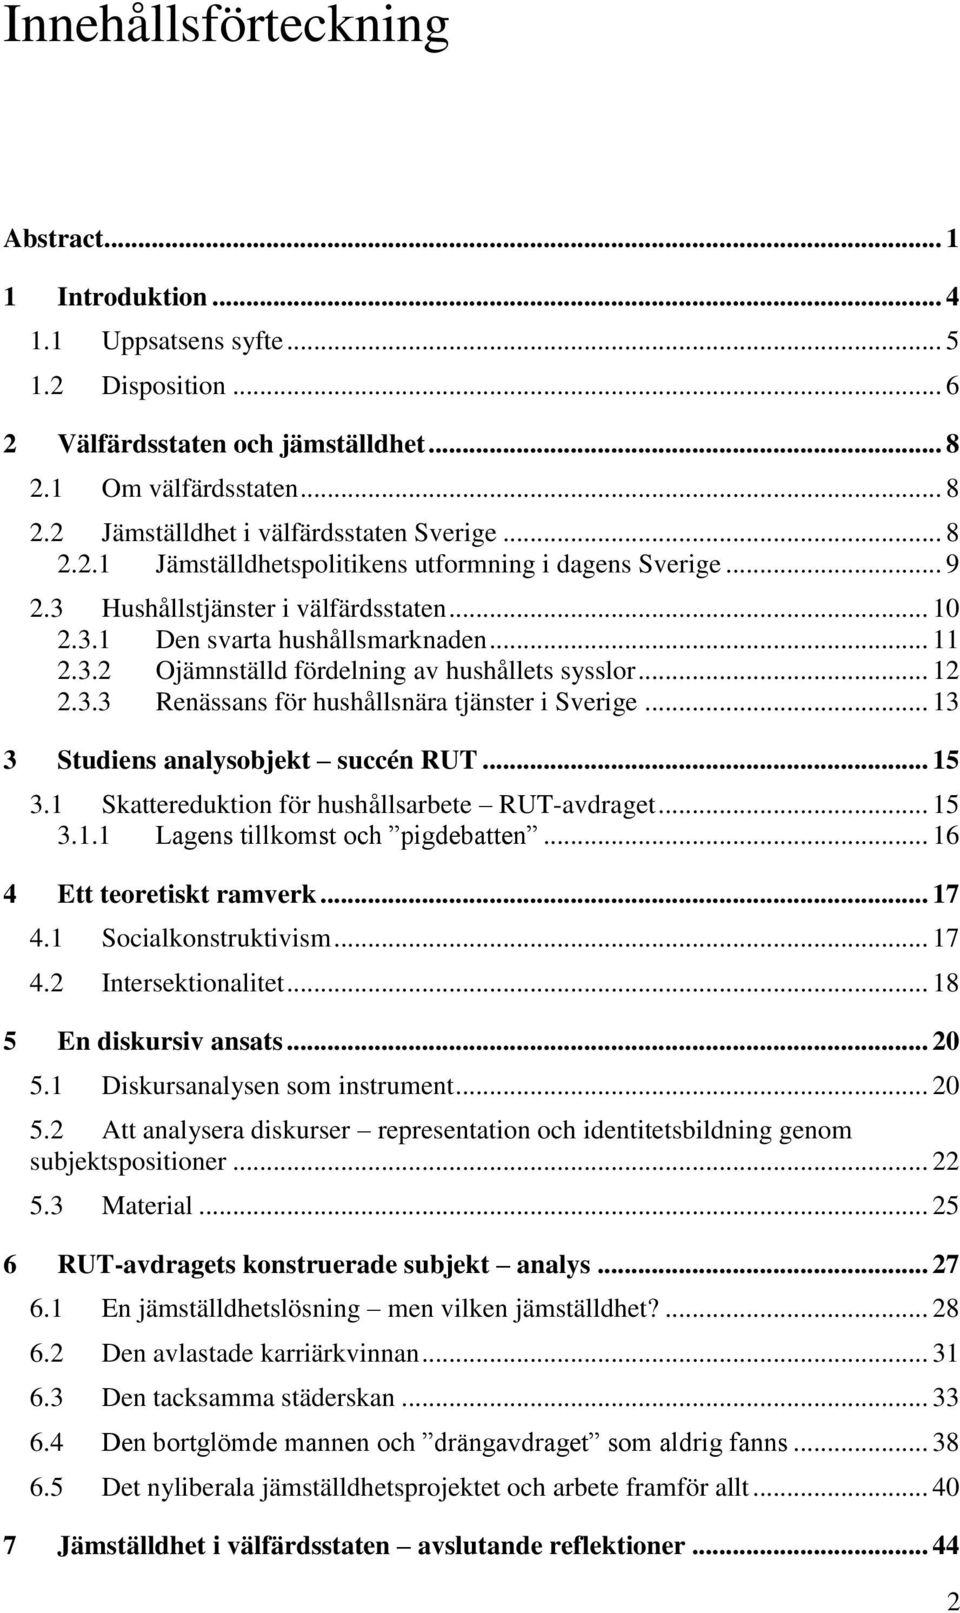 .. 12 2.3.3 Renässans för hushållsnära tjänster i Sverige... 13 3 Studiens analysobjekt succén RUT... 15 3.1 Skattereduktion för hushållsarbete RUT-avdraget... 15 3.1.1 Lagens tillkomst och pigdebatten.